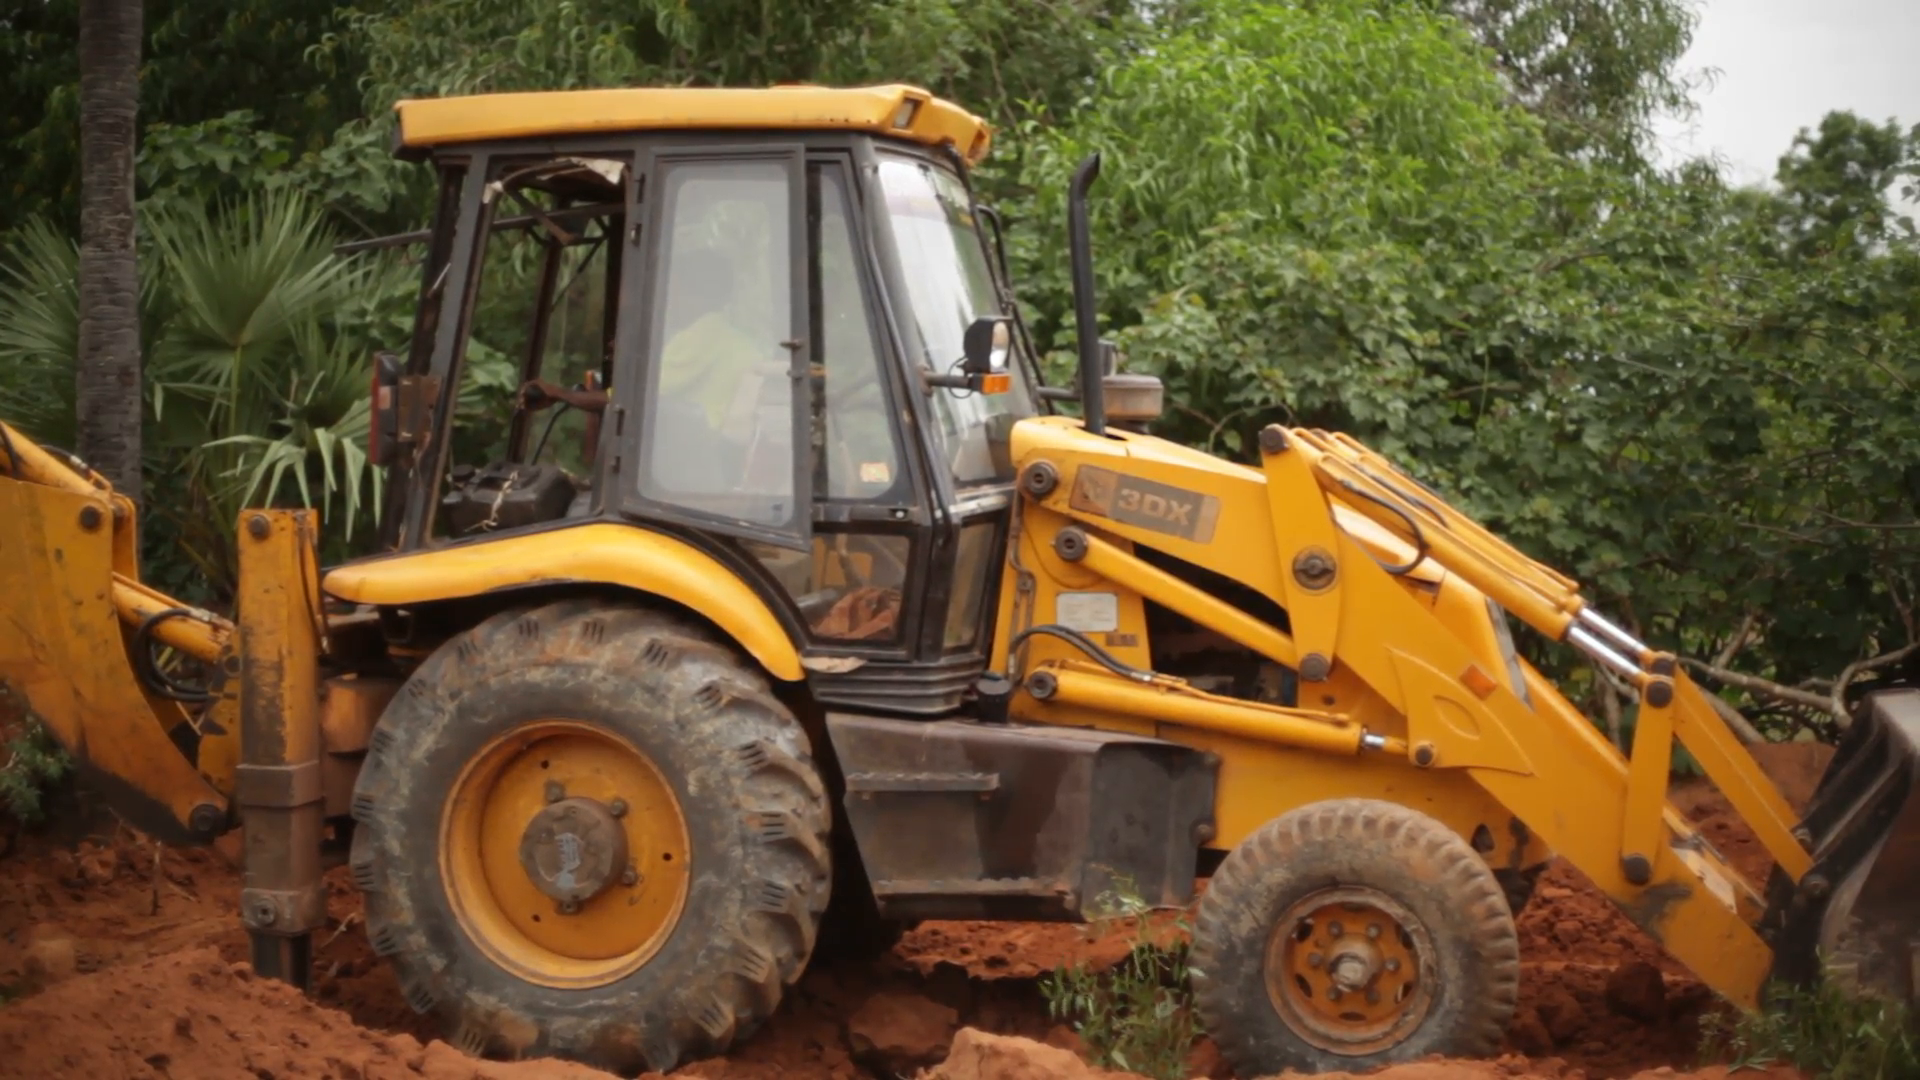 Jcb Bulldozer Tractor Digging Soil In India 3 Stock - Bulldozer , HD Wallpaper & Backgrounds